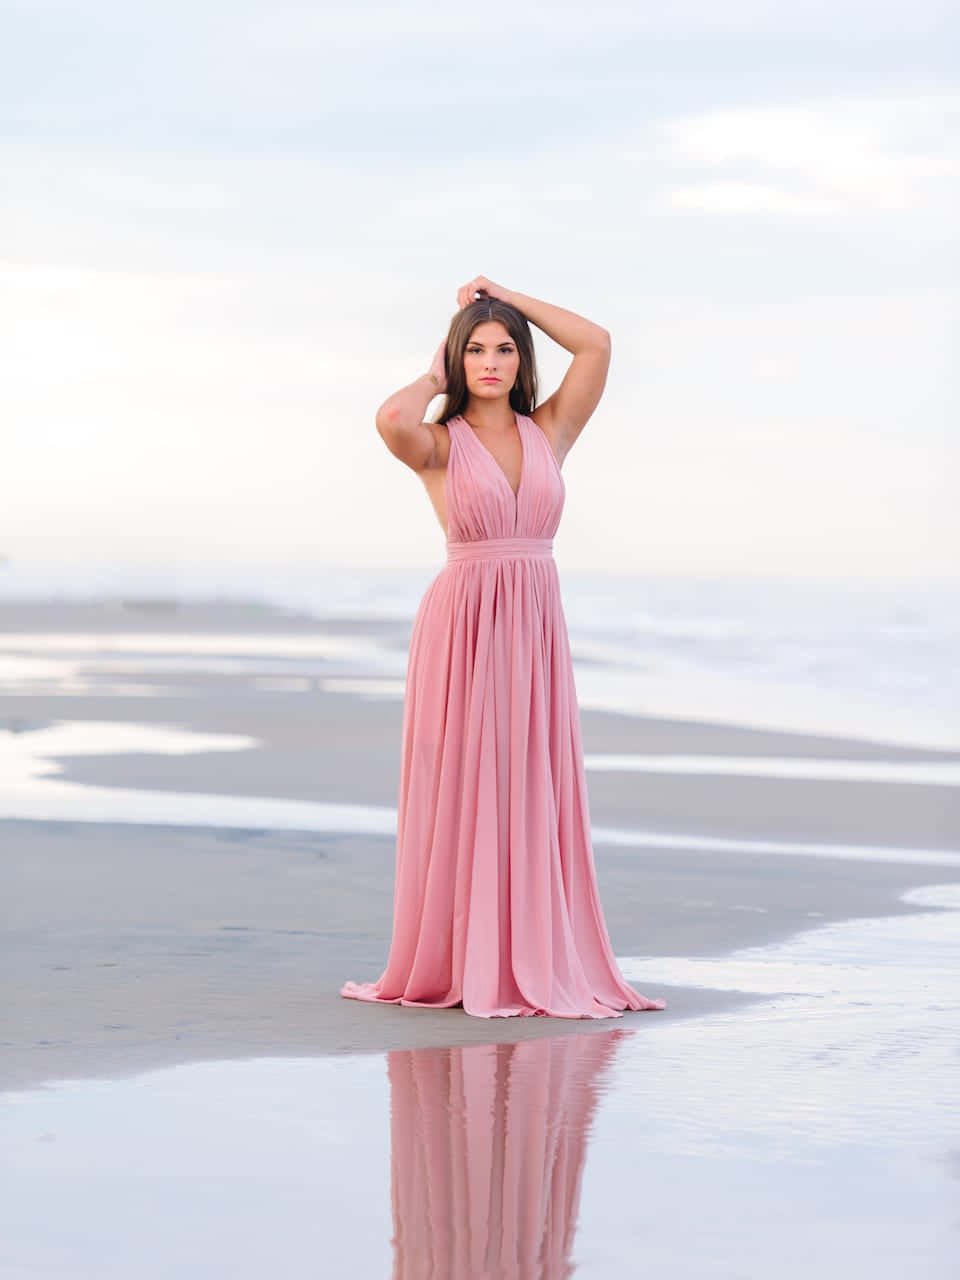 Immaginedi Una Signora In Un Lungo Vestito Rosa Vicino Alla Spiaggia.